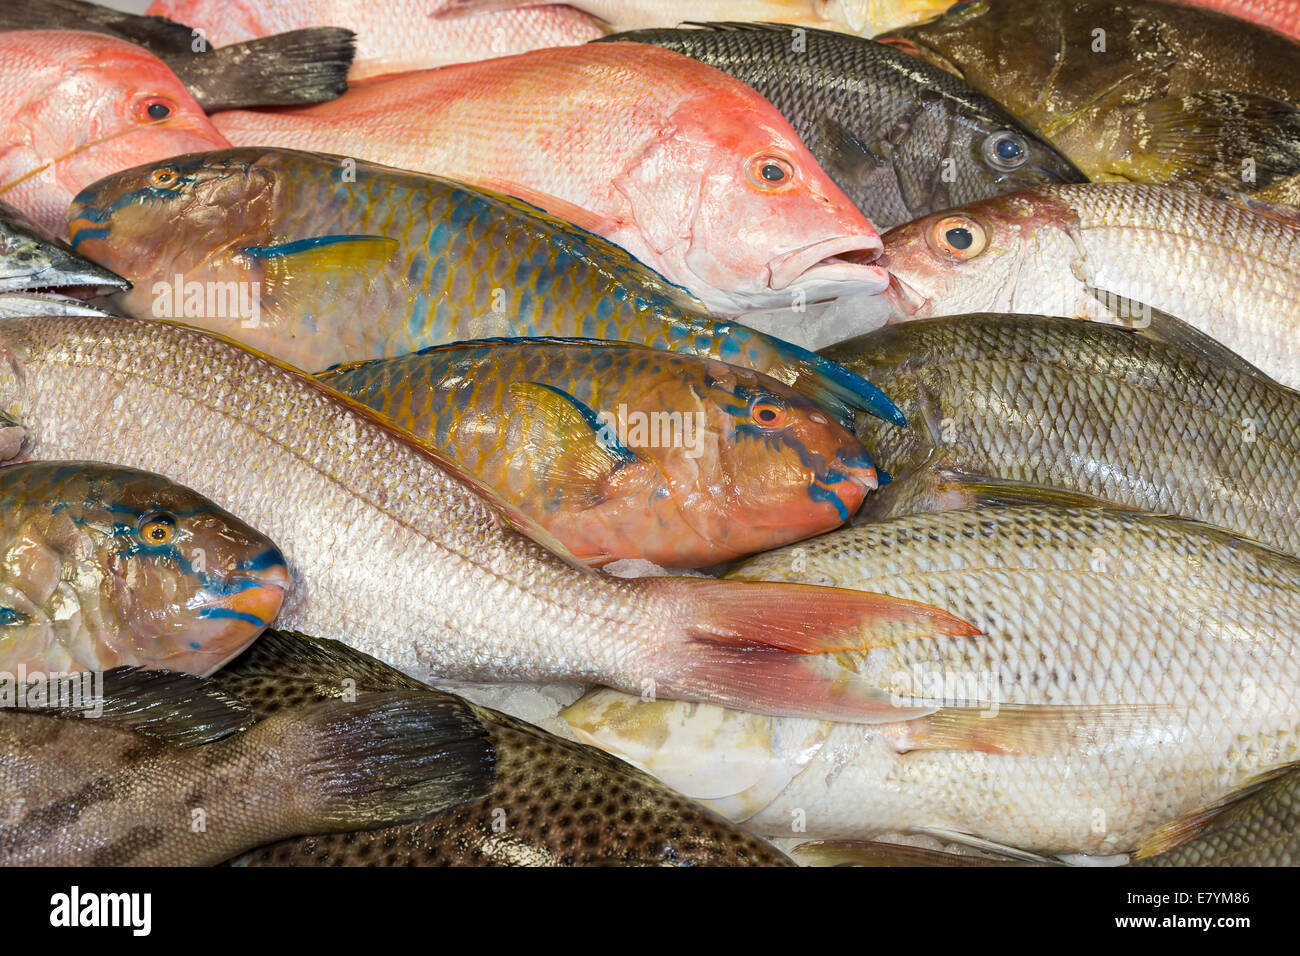 Various fresh fish exposed at a fish market Stock Photo